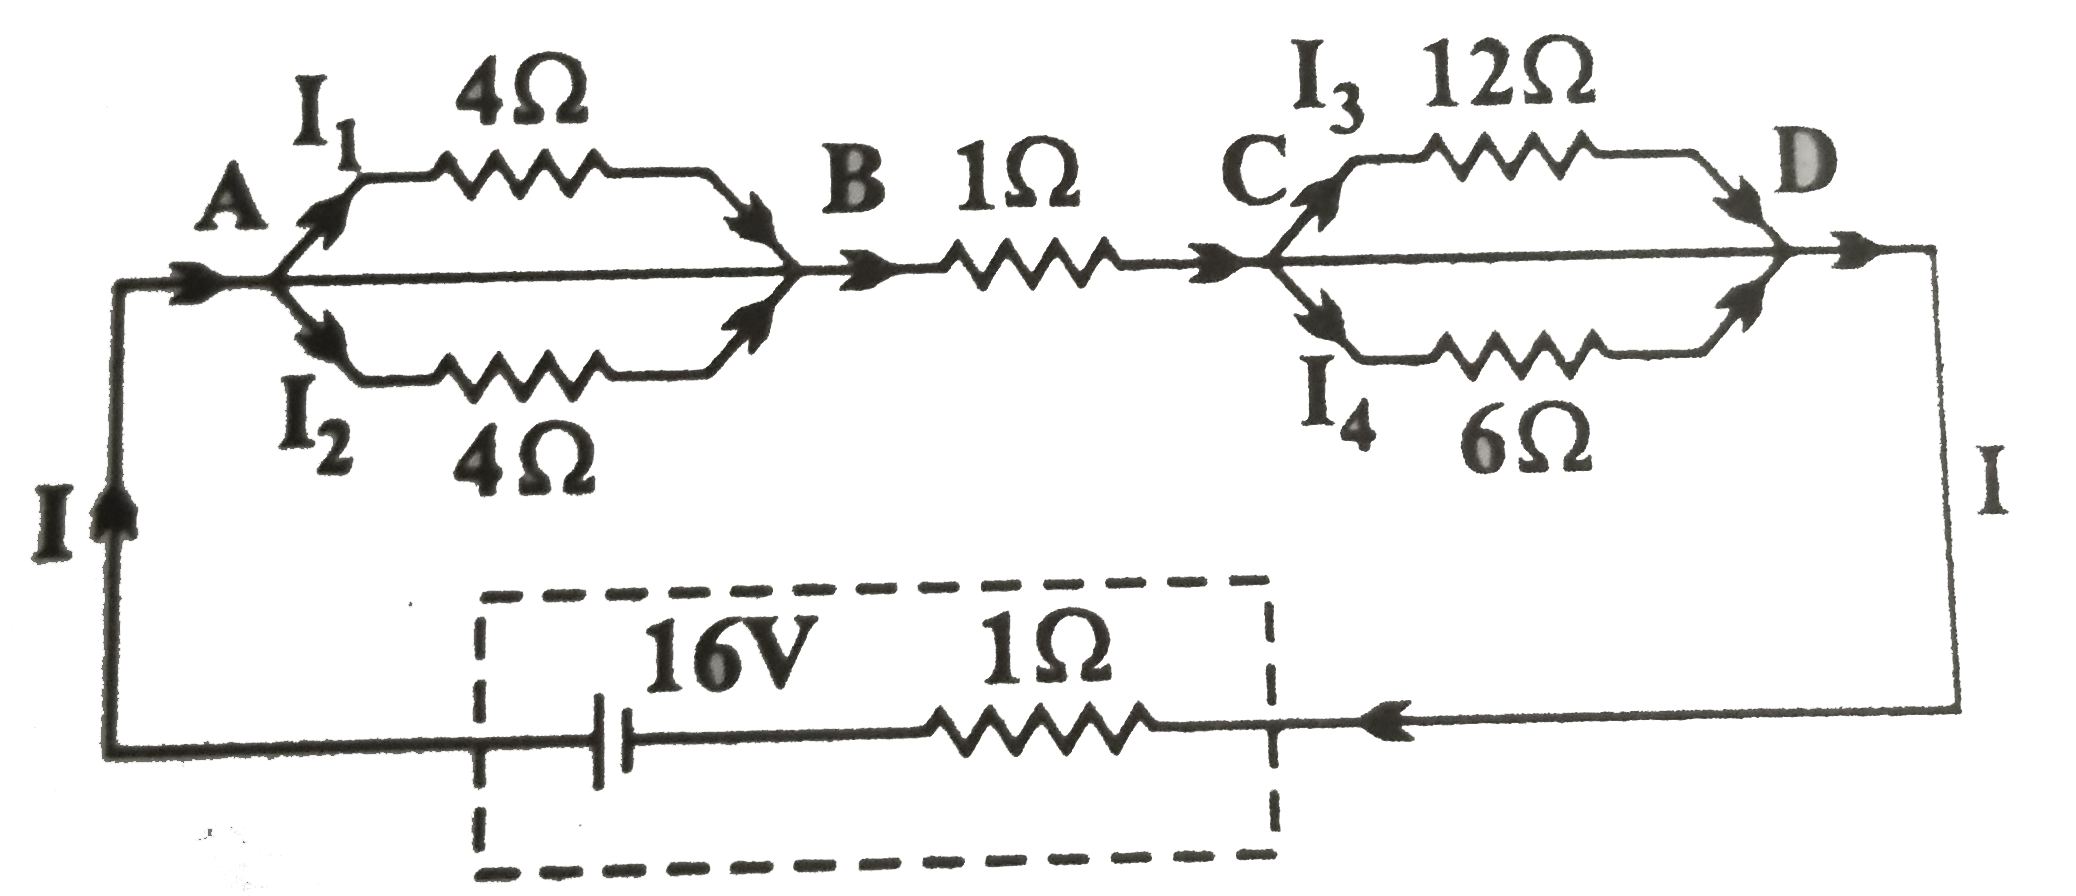 चित्र में दिखाए गए अनुसार 1Omega आंतरिक प्रतिरोध के 16V की एक बैटरी से एक नेटवर्क को जोड़ा गया है।      वोल्टता पात V(AB),V(BC) तथा V(CD) ज्ञात कीजिए।